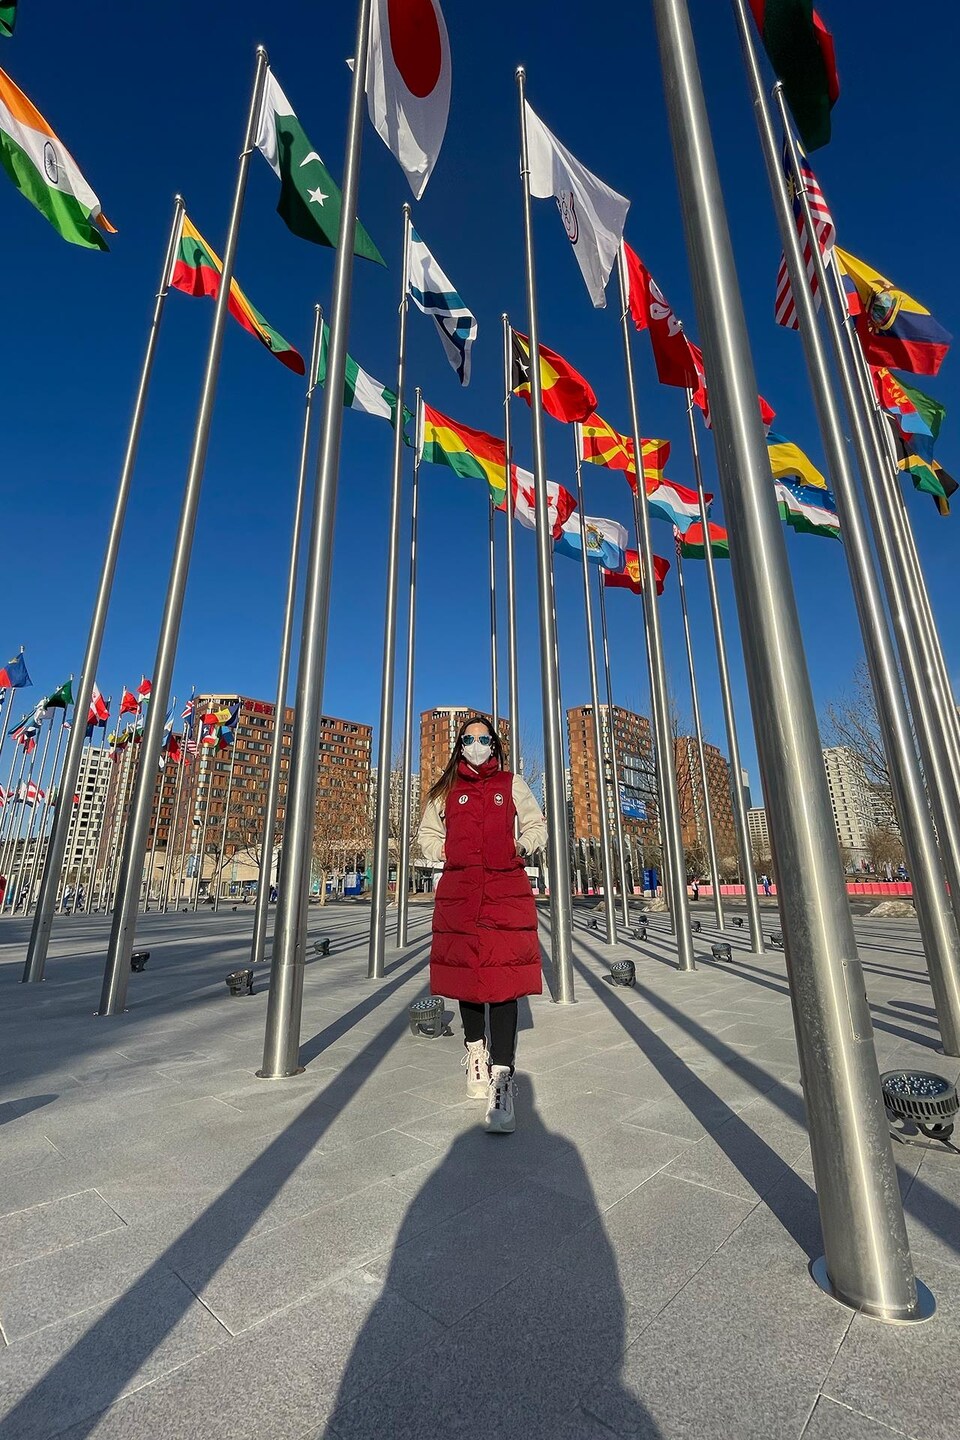 La femme se tient parmi des mats de drapeaux de tous les pays